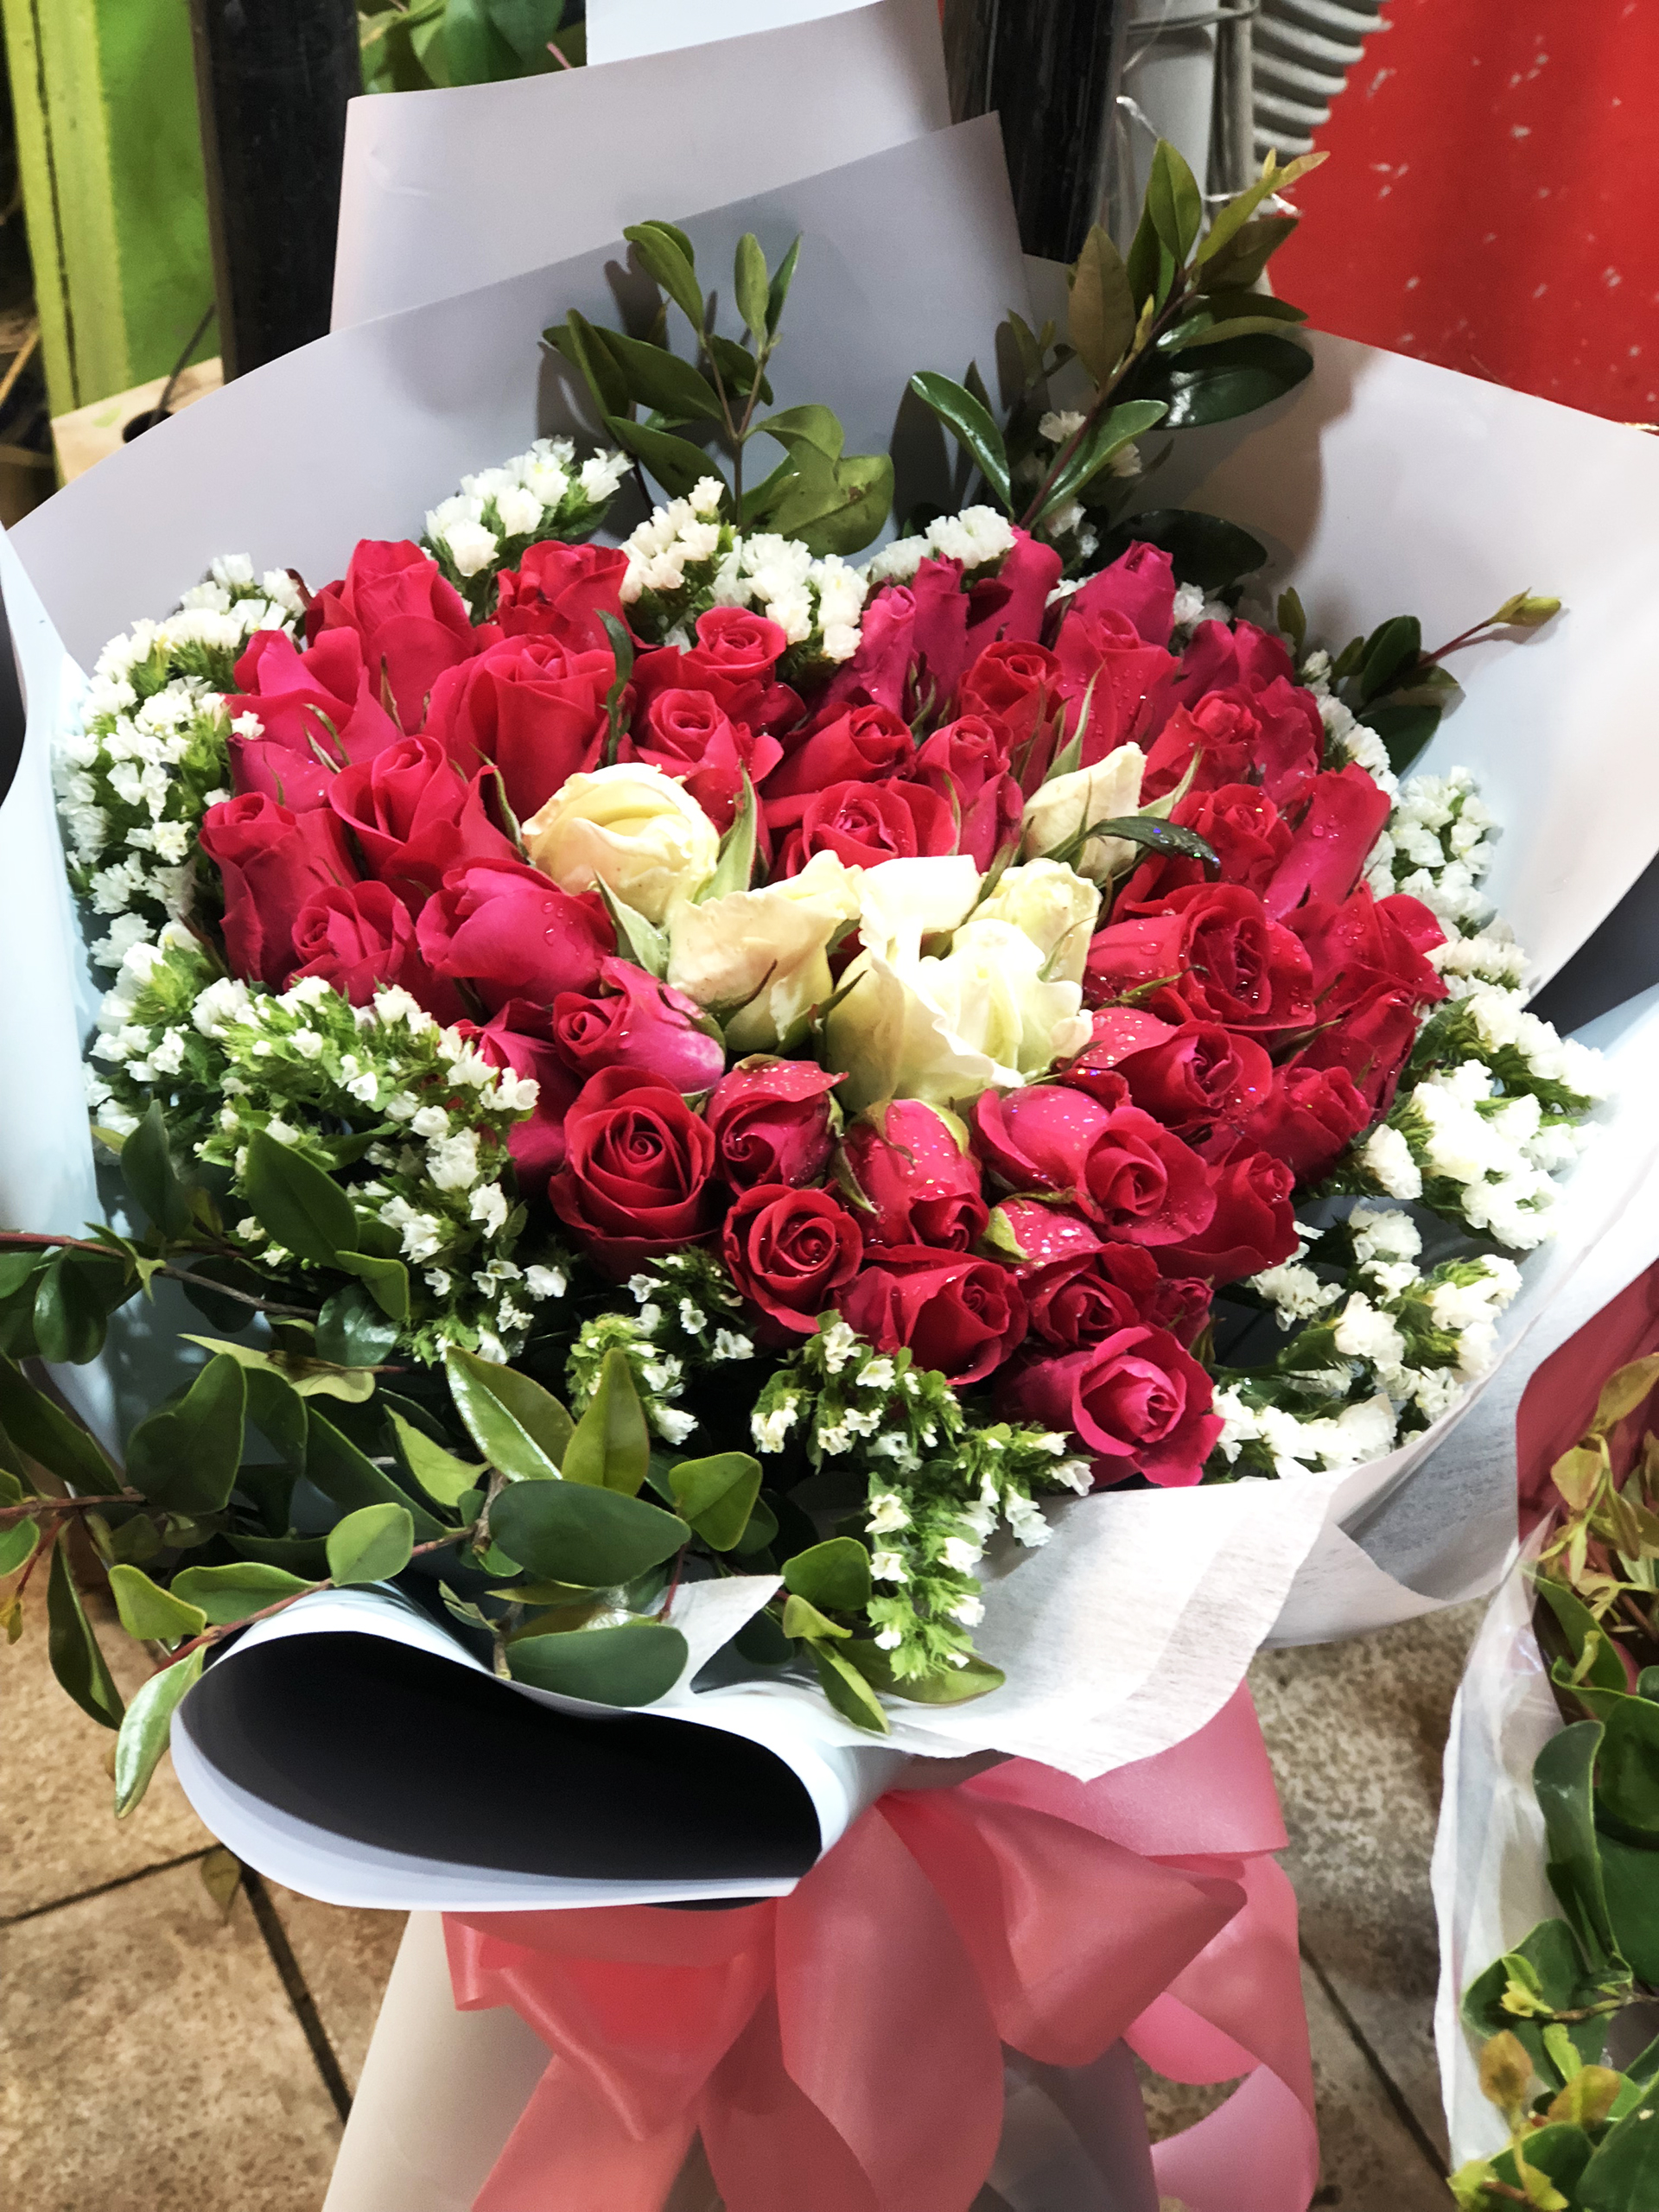 Hoa tặng Valentine là món quà không thể thiếu trong ngày đặc biệt này. Với sắc đỏ của hoa hồng hay sự tinh tế của hoa lily, một bó hoa xinh xắn sẽ làm cho bất kỳ ai cũng phải thổn thức và say đắm. Hãy cùng ngắm nhìn những bó hoa tuyệt đẹp dành tặng người ấy.